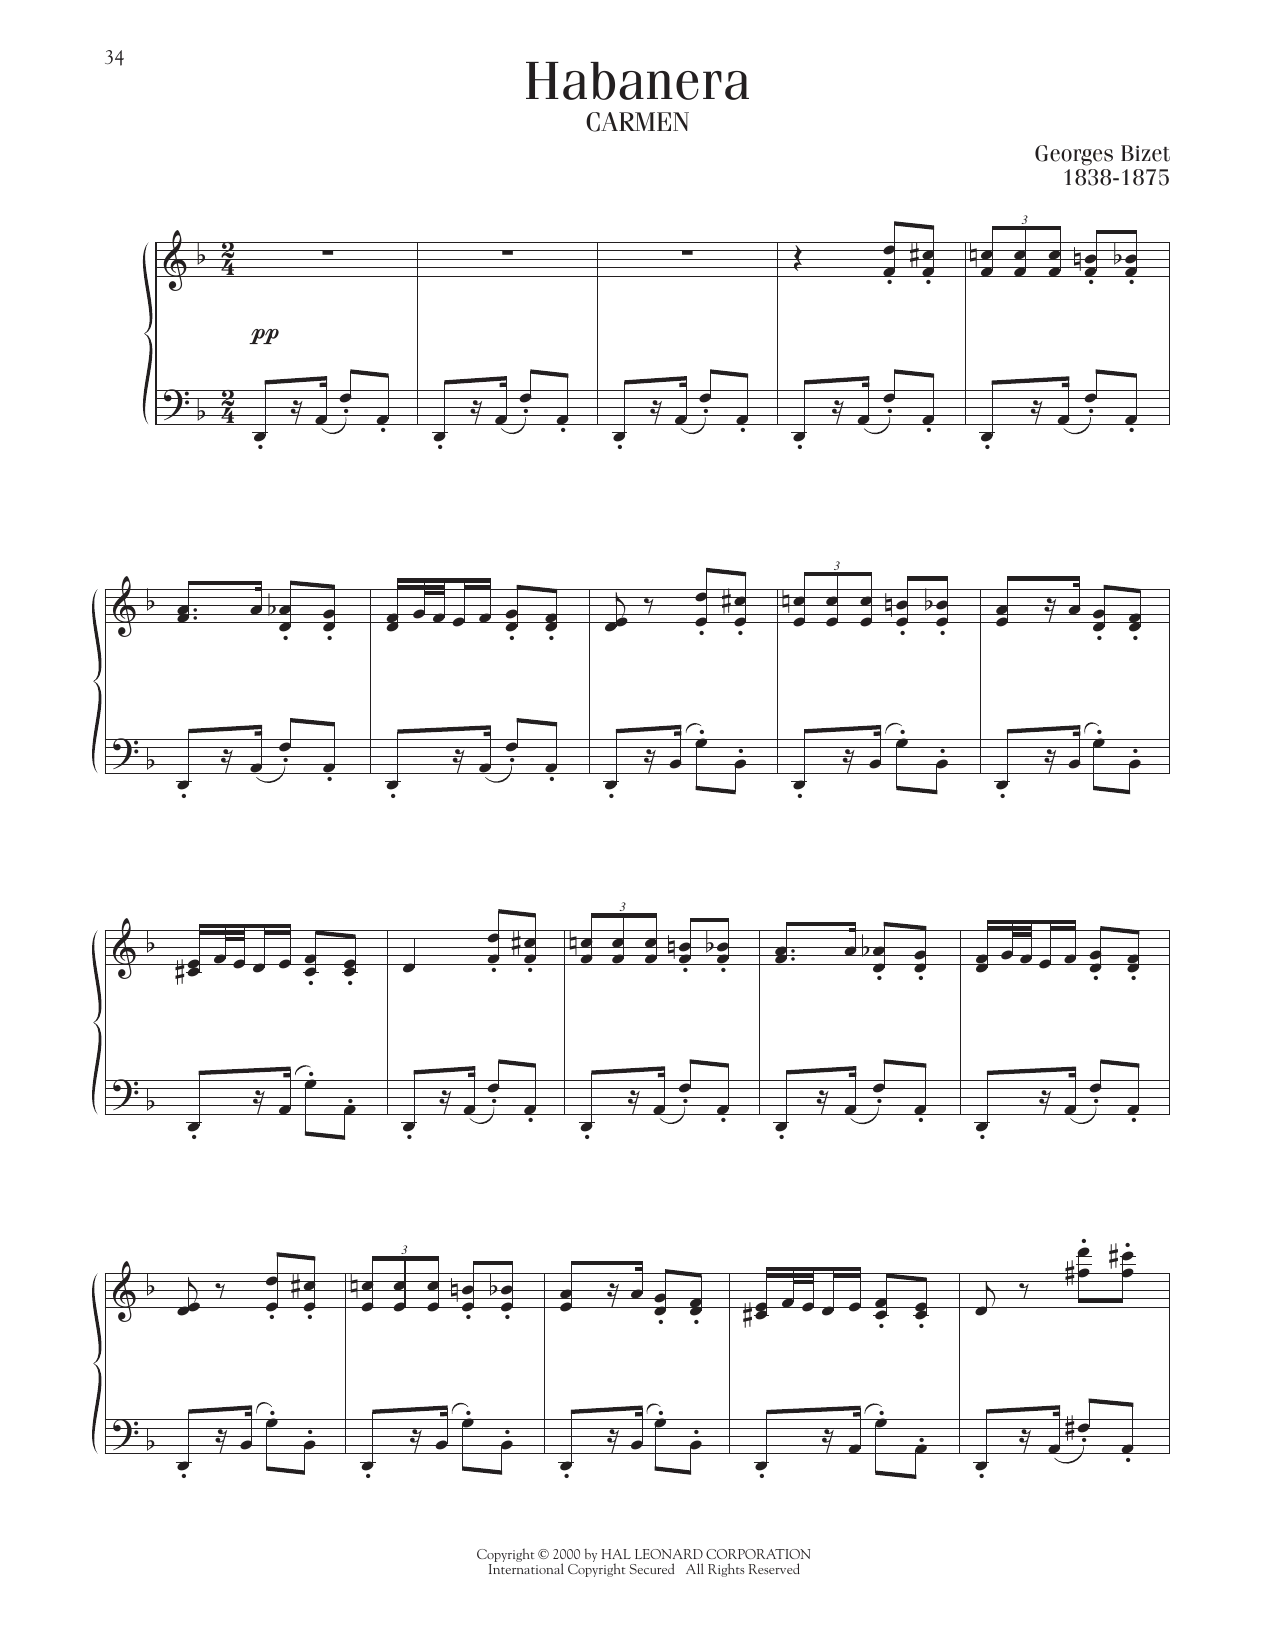 Georges Bizet Habanera sheet music notes printable PDF score